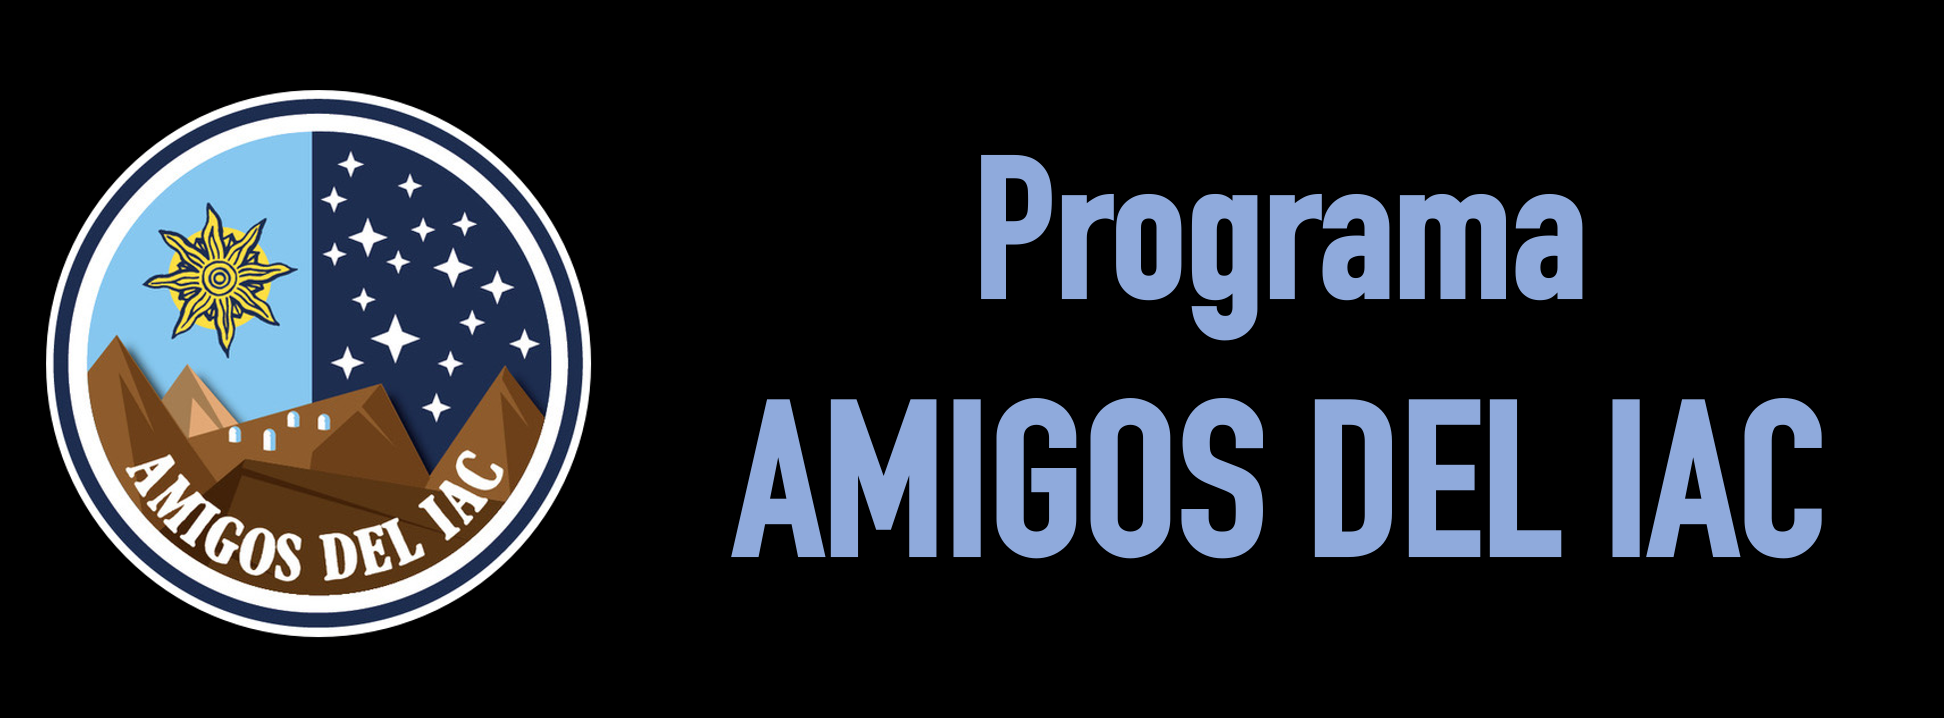 AMIGOS DEL IAC Programme